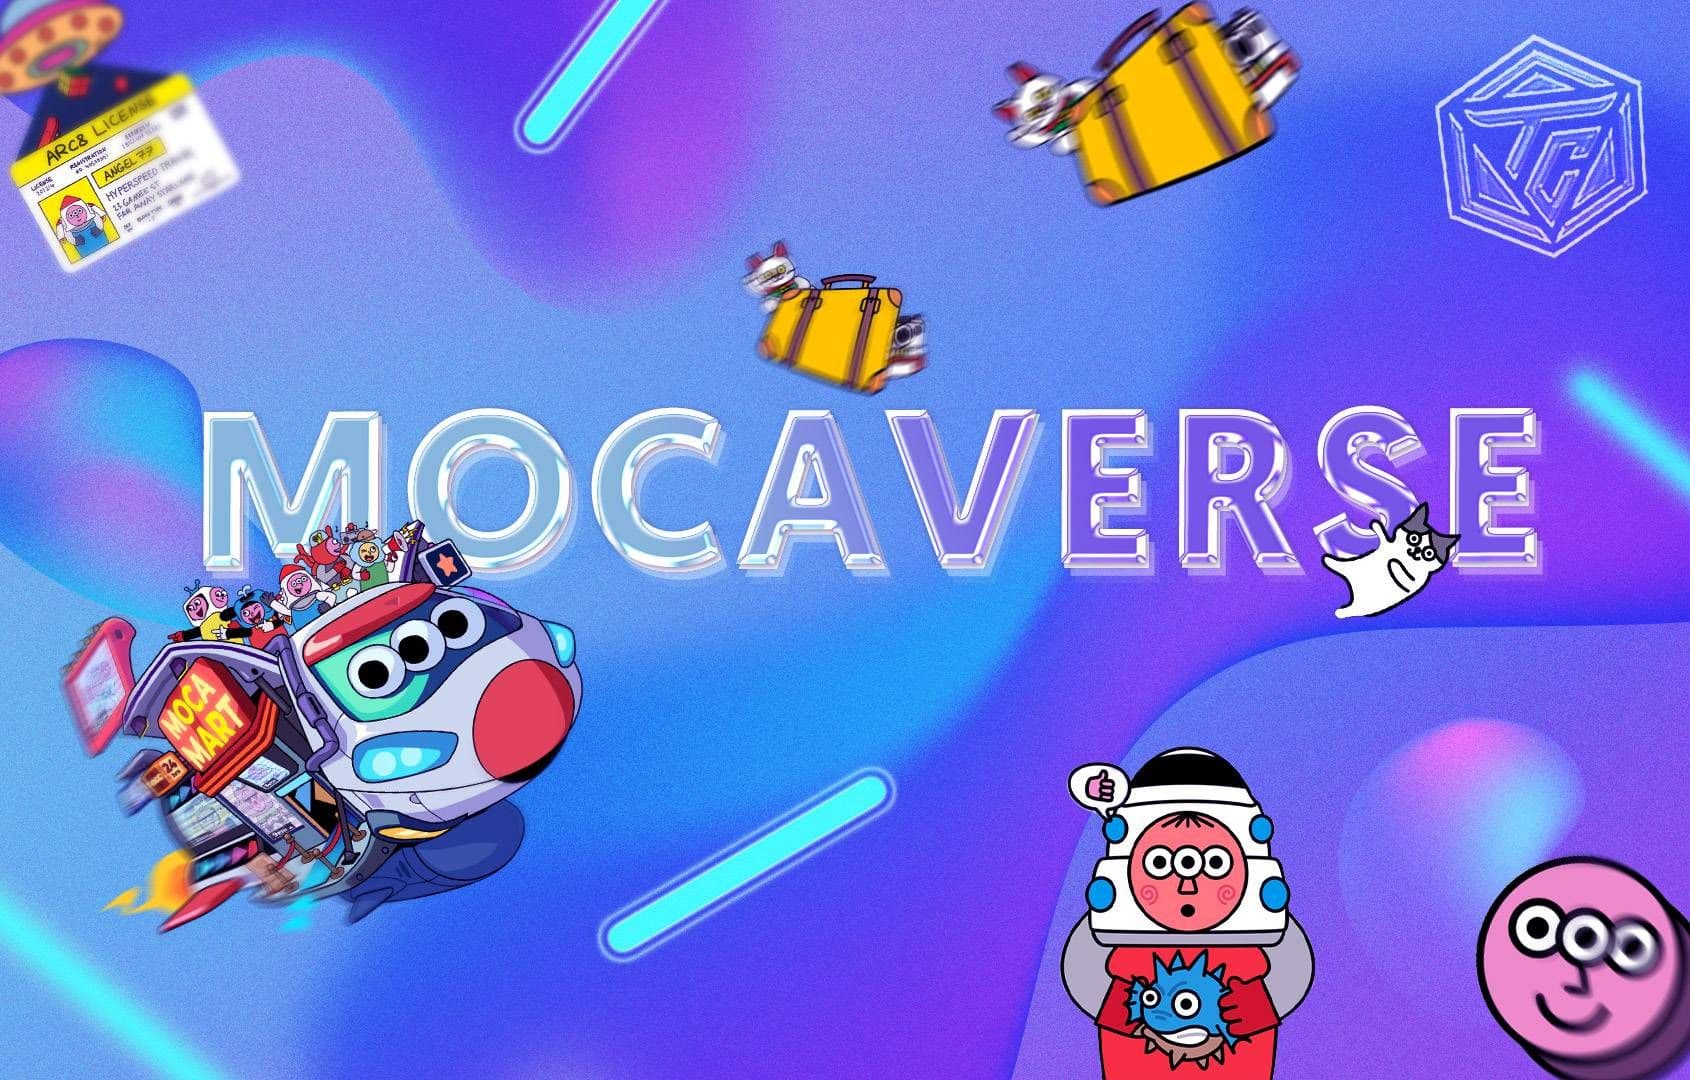 Mocaverse là gì? Bộ NFT được phát triển bởi gã khổng lồ Web3 - Animoca Brands